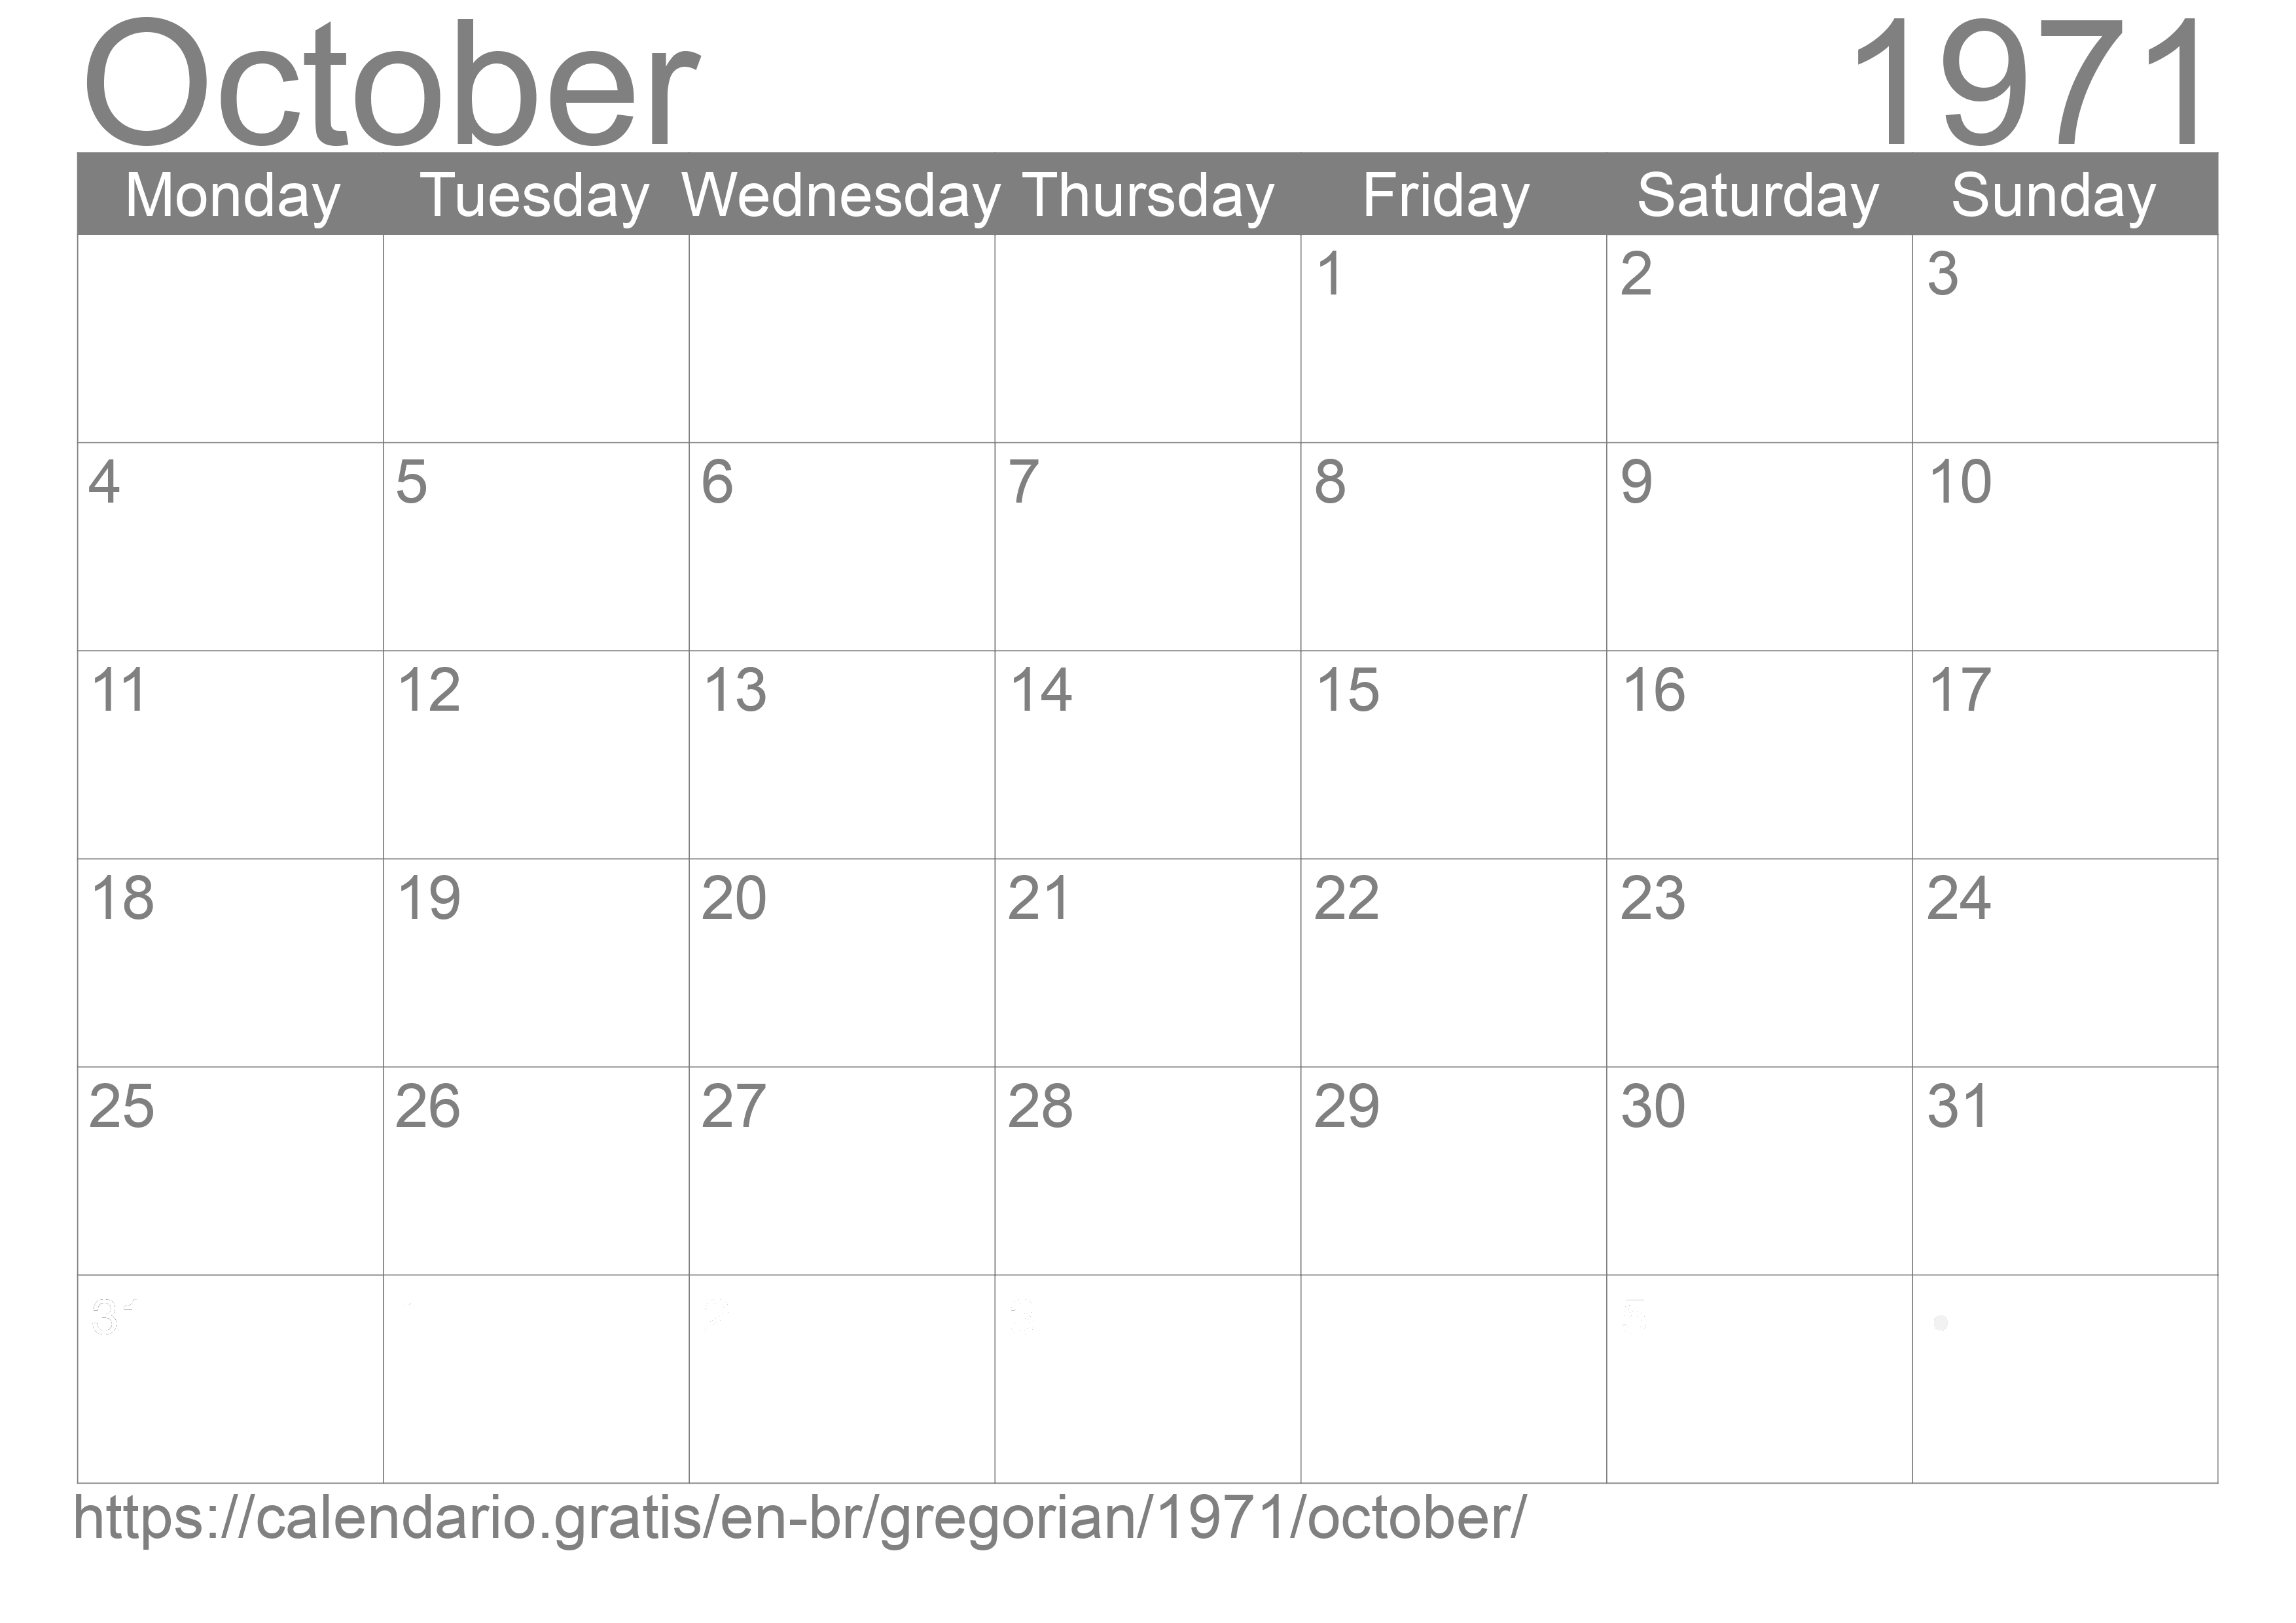 Calendar October 1971 to print